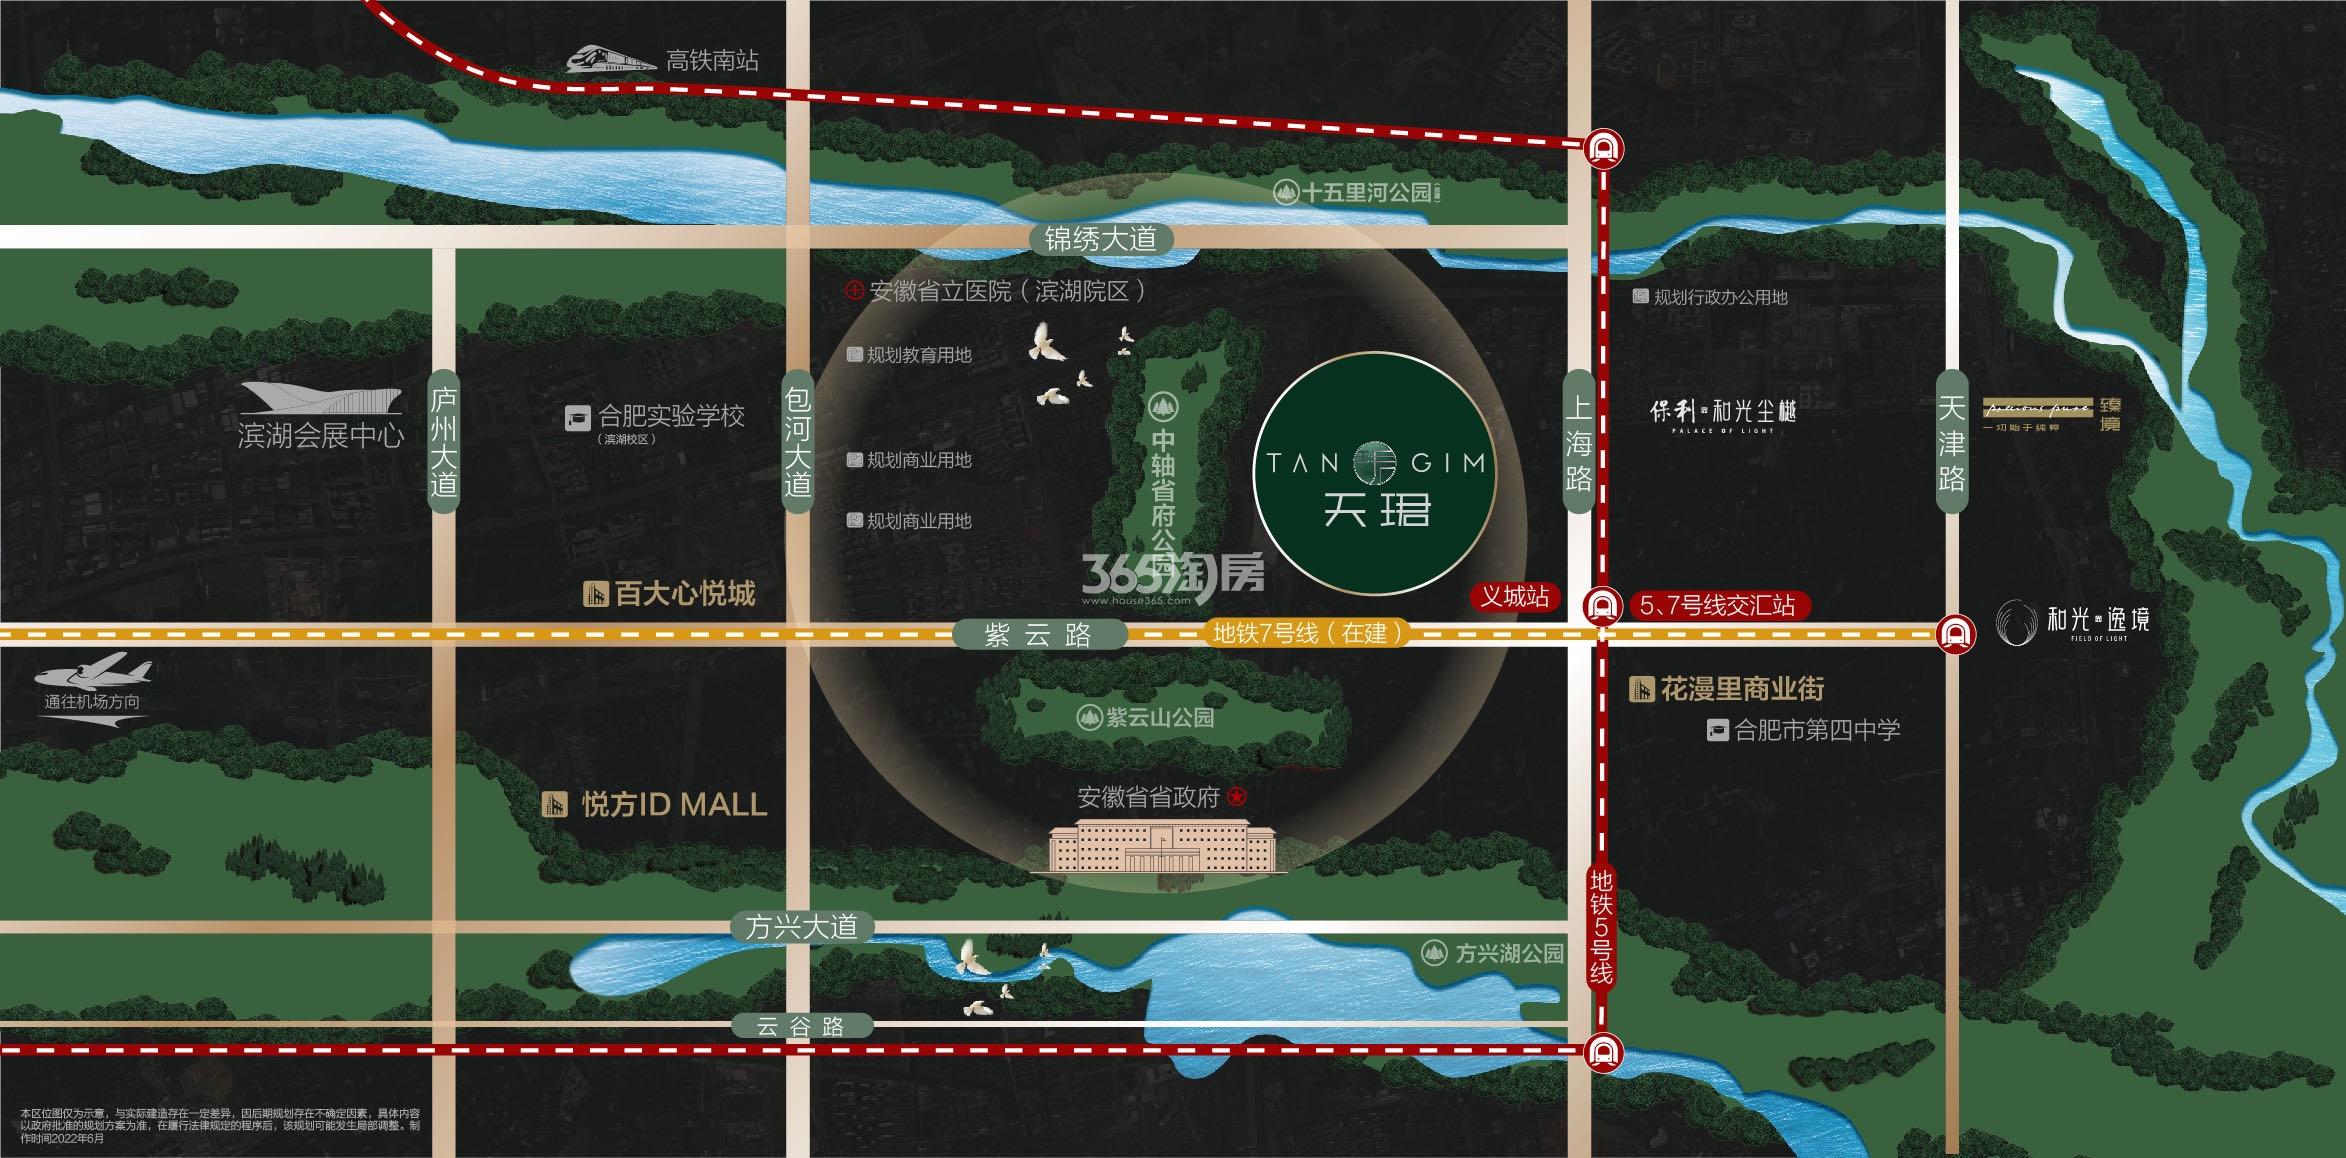 3y体育最全地产项目开发全流程图解(建议收藏)!-上海365淘房网-房地产开发流程(图4)